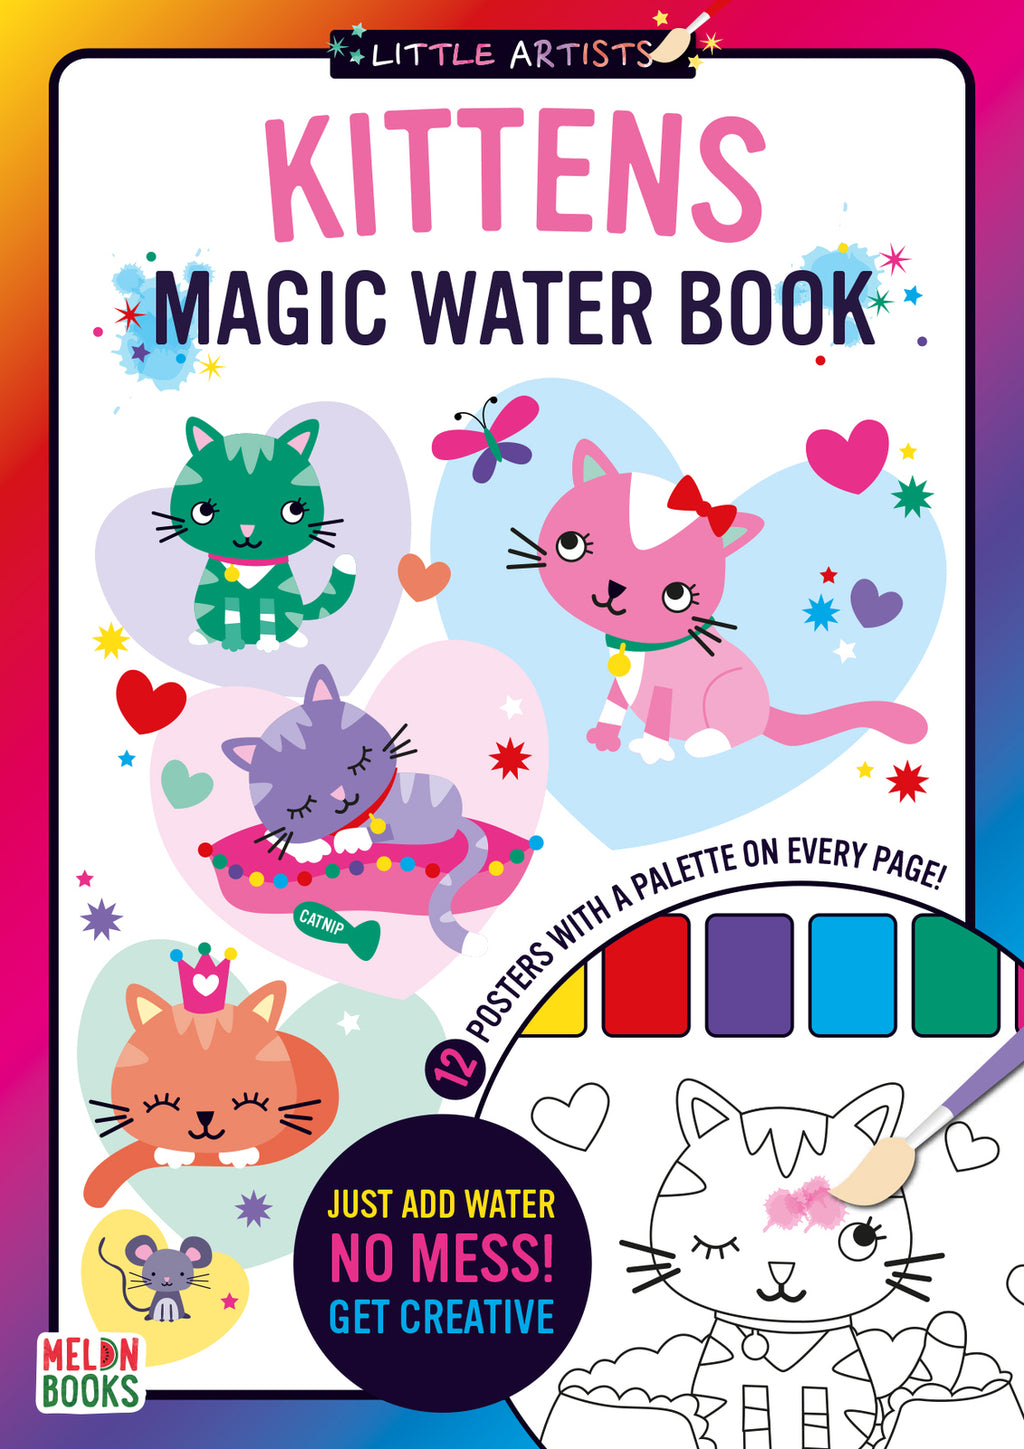 Little Artists: Kittens Magic Water Book